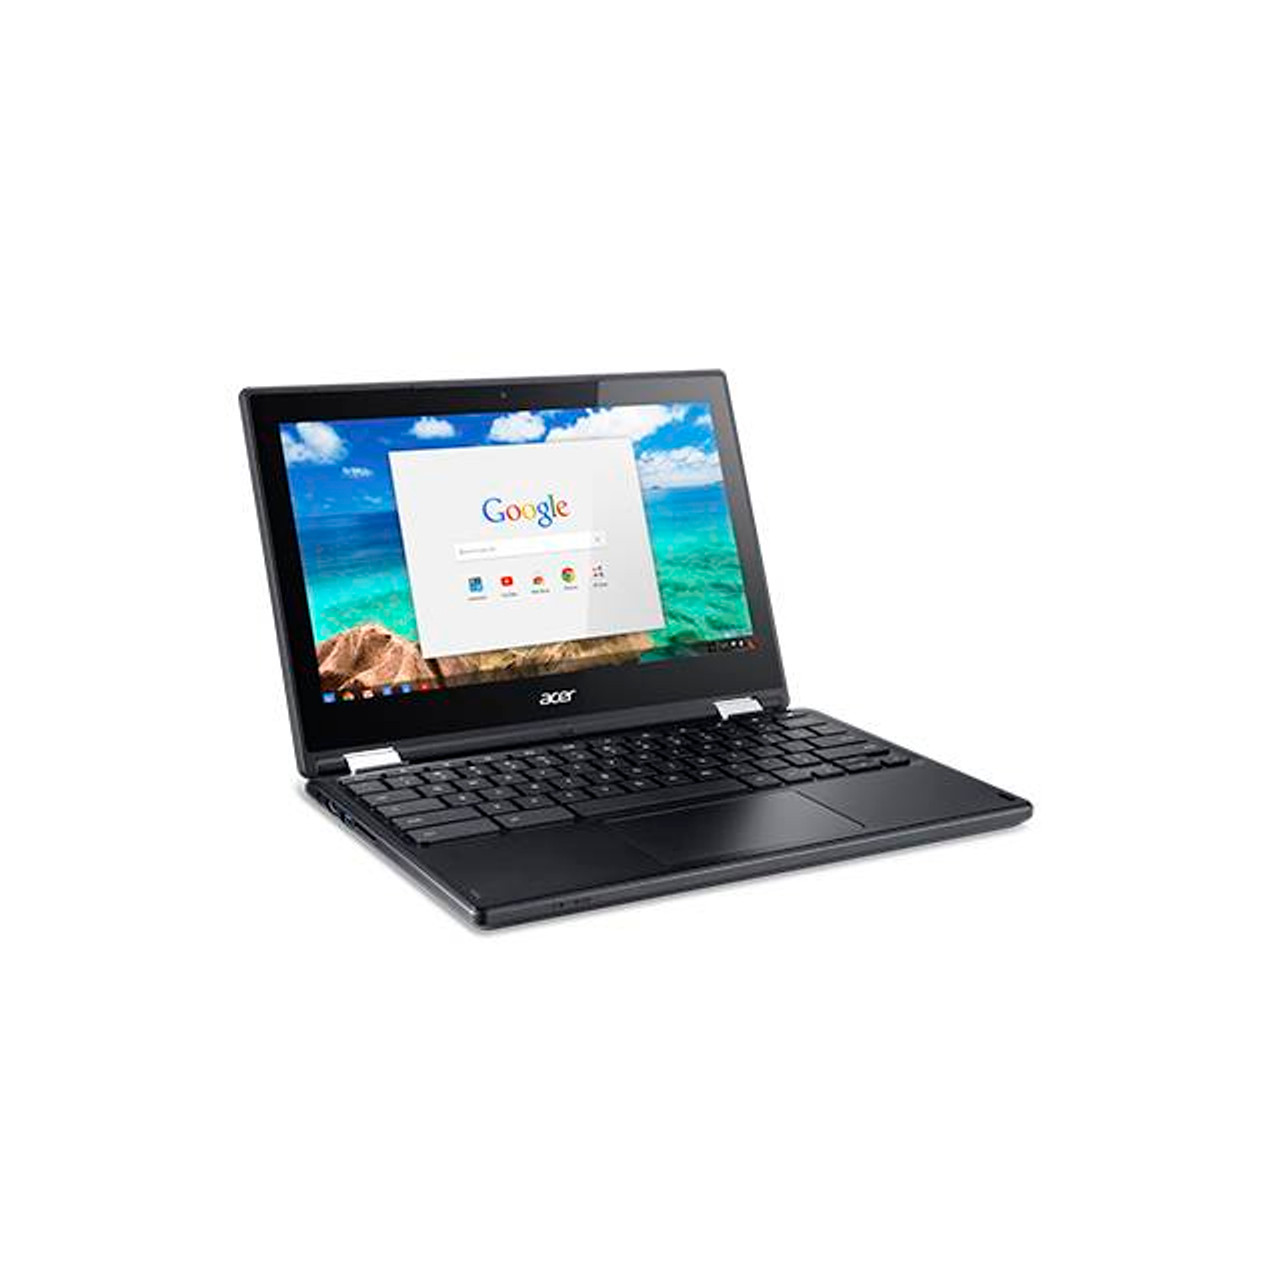 Acer Chromebook R11 C738T-C5R6 11.6 inch Touchscreen Intel Celeron N3150 1.6GHz/ 4GB DDR3L/ 32GB eMMC/ USB3.0/ Chrome Notebook (Black)